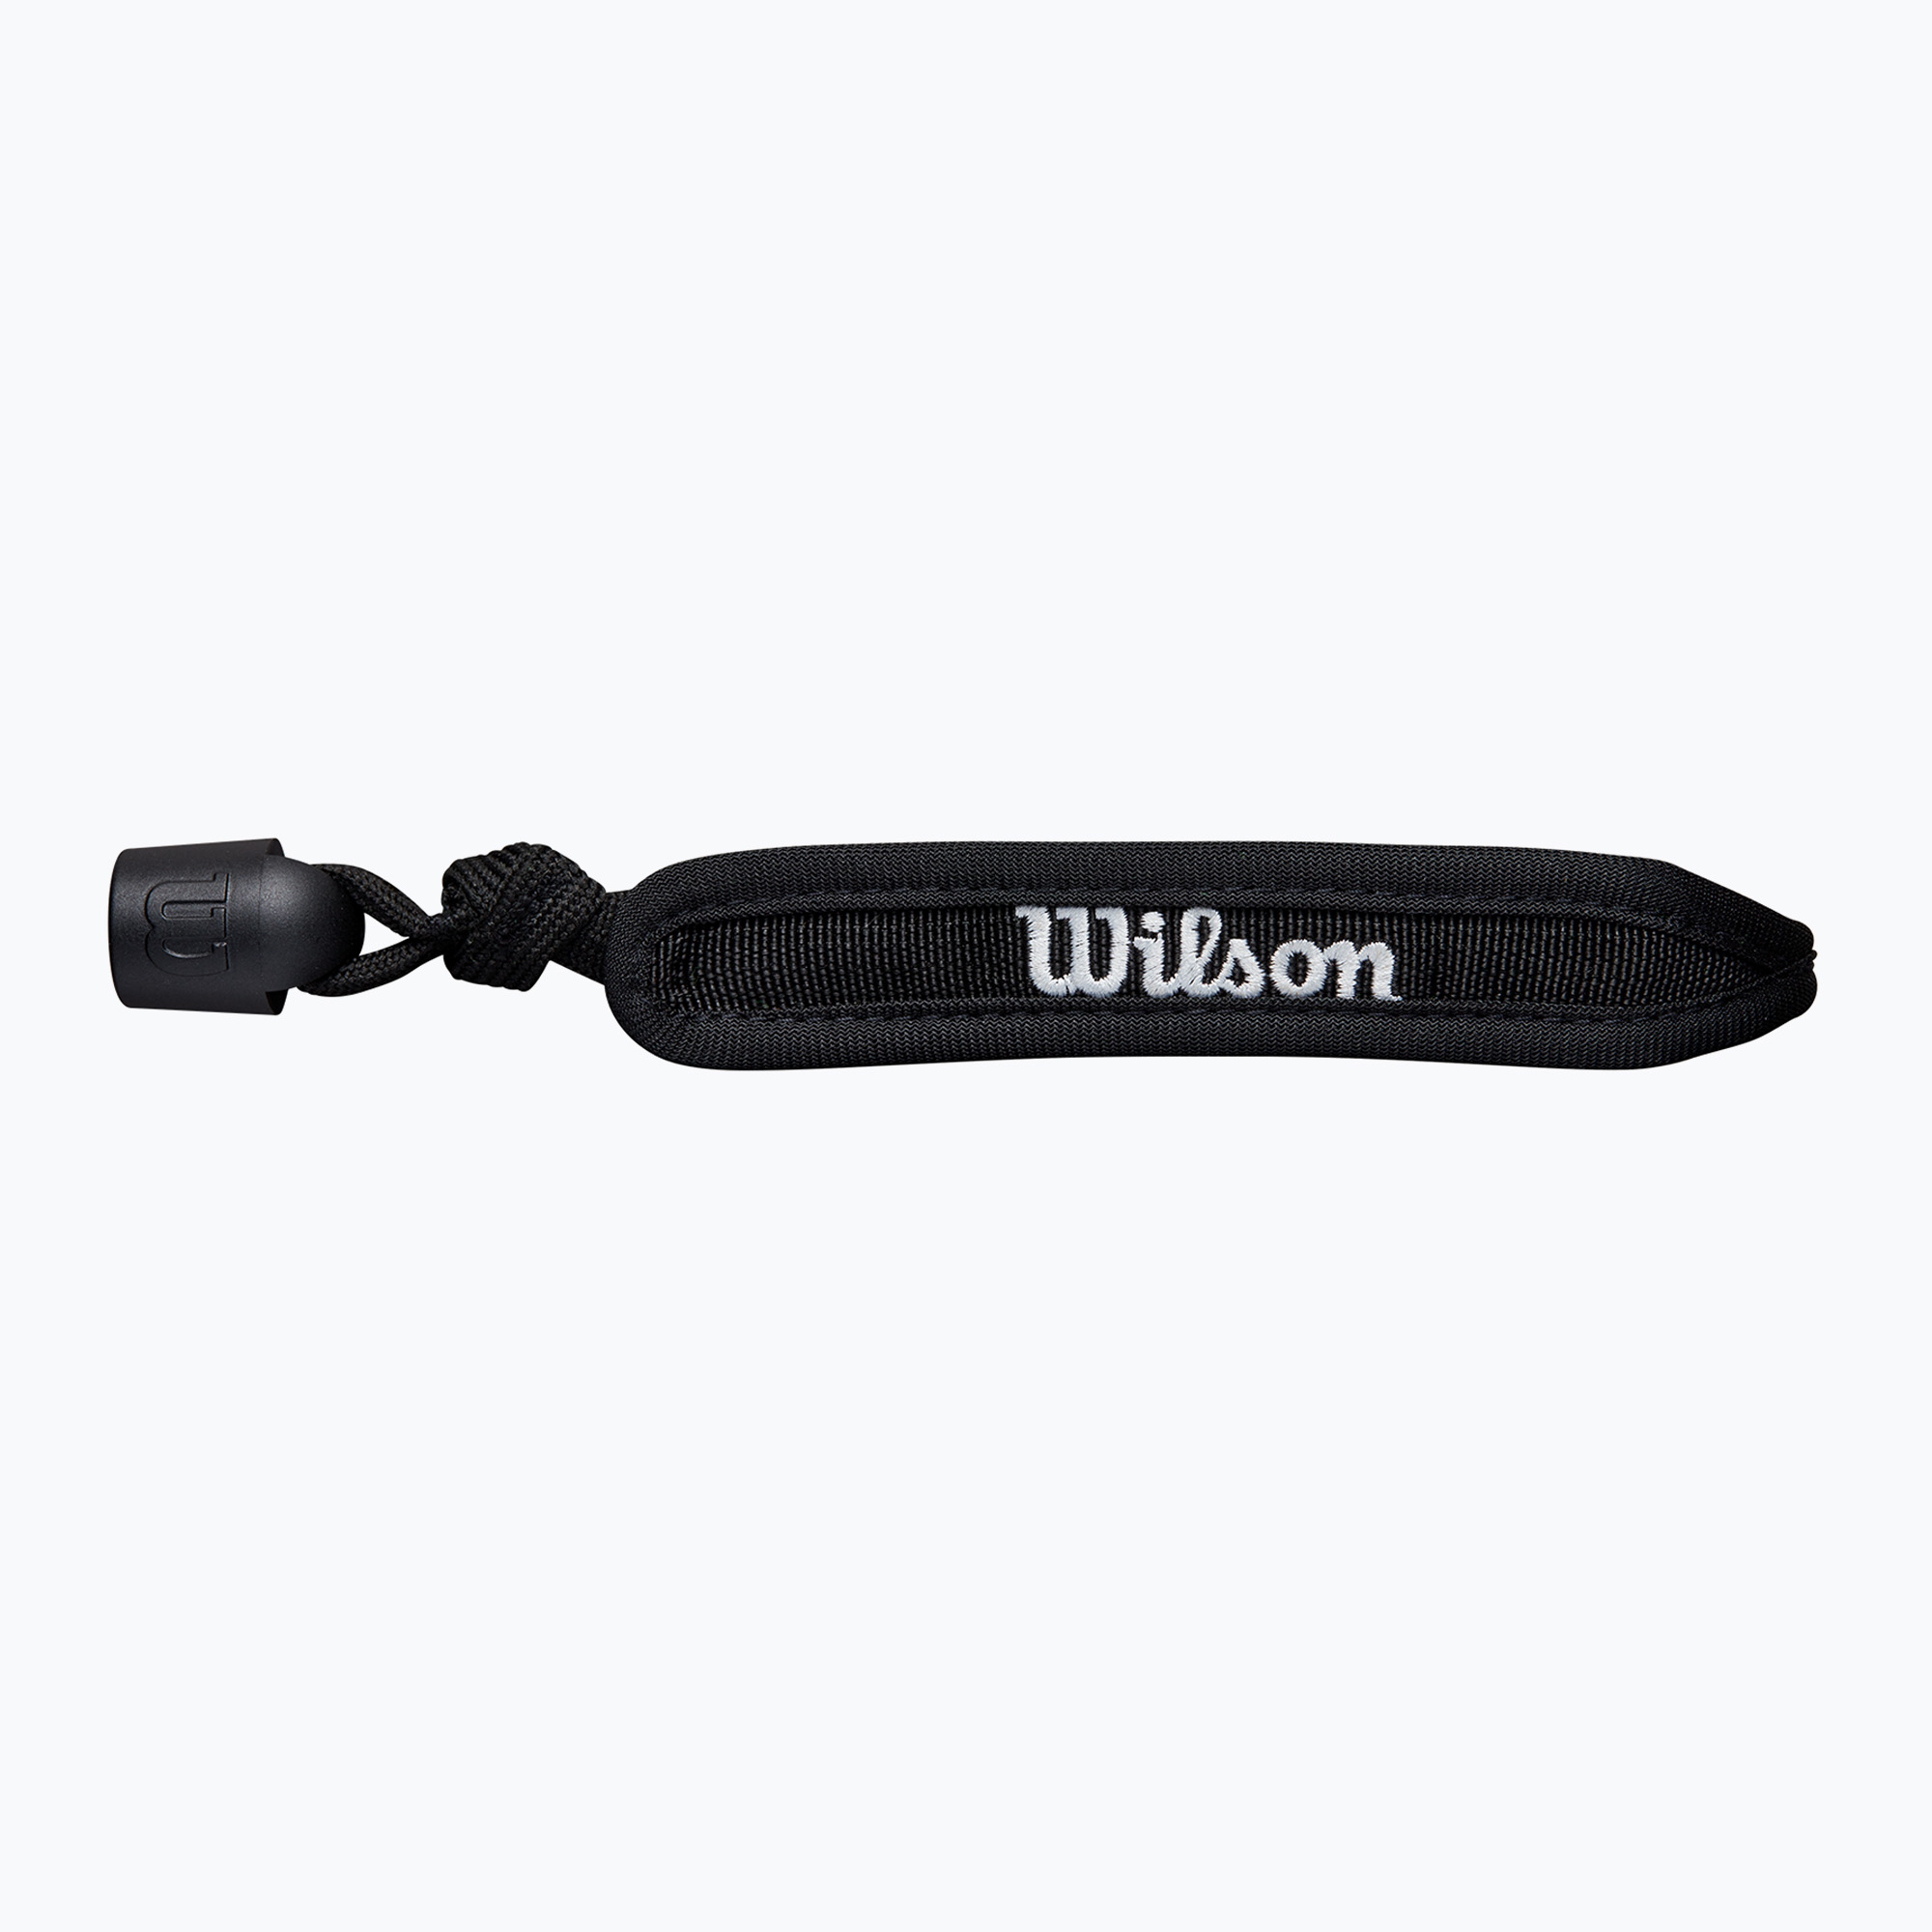 Curea pentru încheietură Wilson Wrist Cord Comfort Cuff black